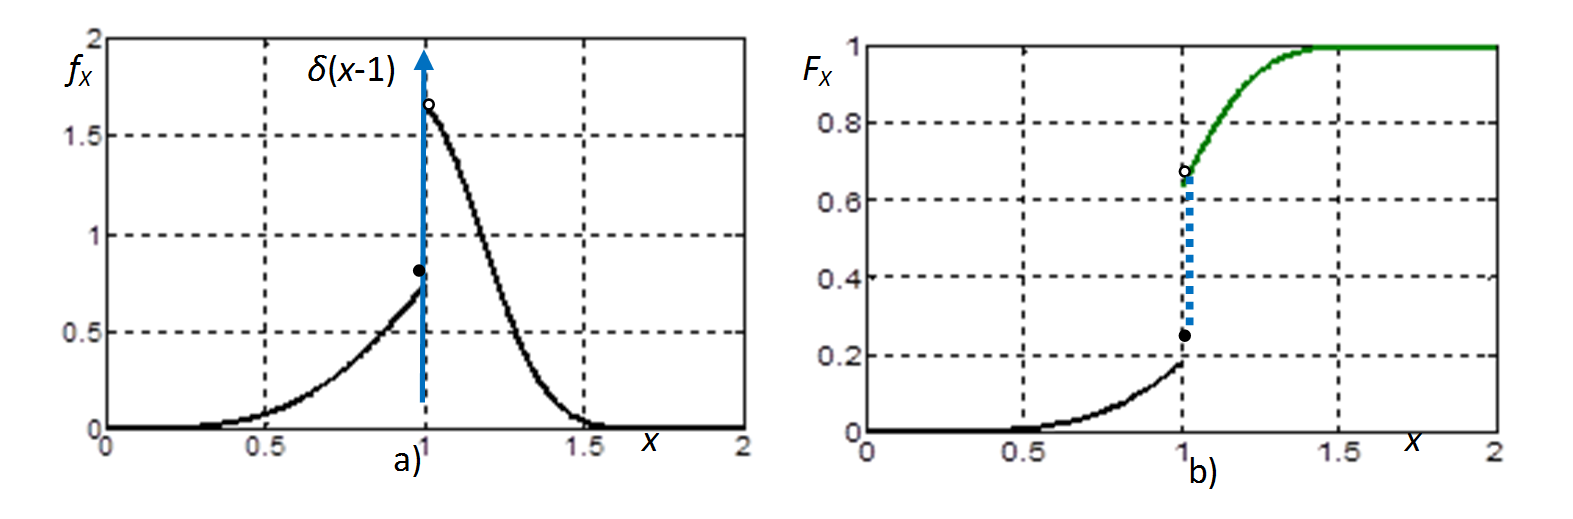 Nem-negatív, szakadással rendelkező folytonos változók a) sűrűségfüggvénye és b) eloszlásfüggvénye